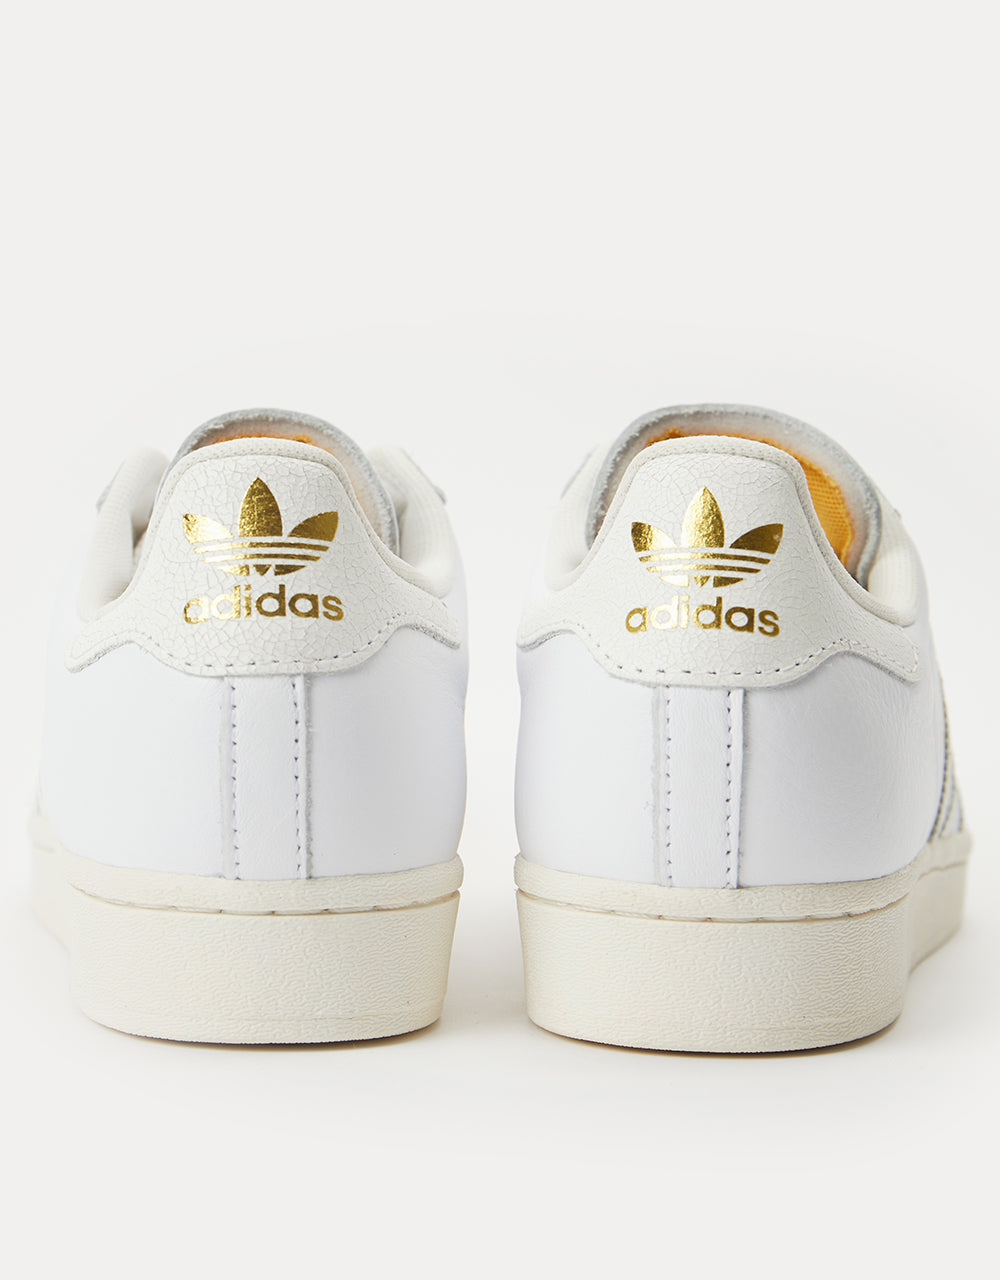 adidas Superstar ADV Skate Shoes - White/White/Chalk White